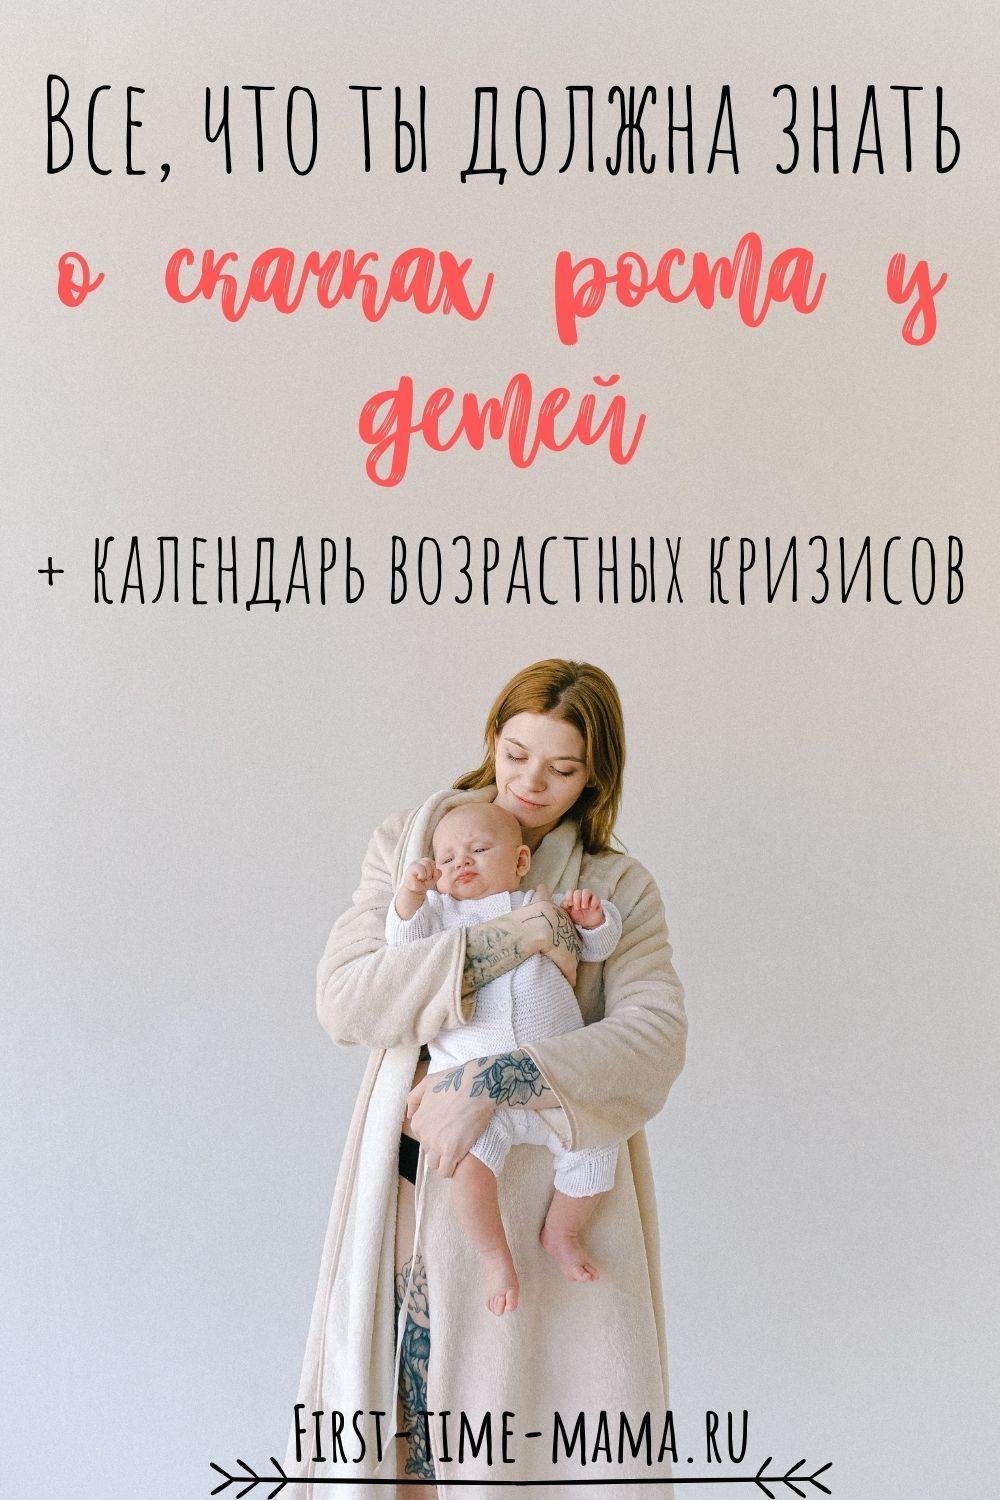 Все, что ты должна знать о скачках роста и возрастных кризисах у детей, календарь | Впервые мама first-time-mama.ru